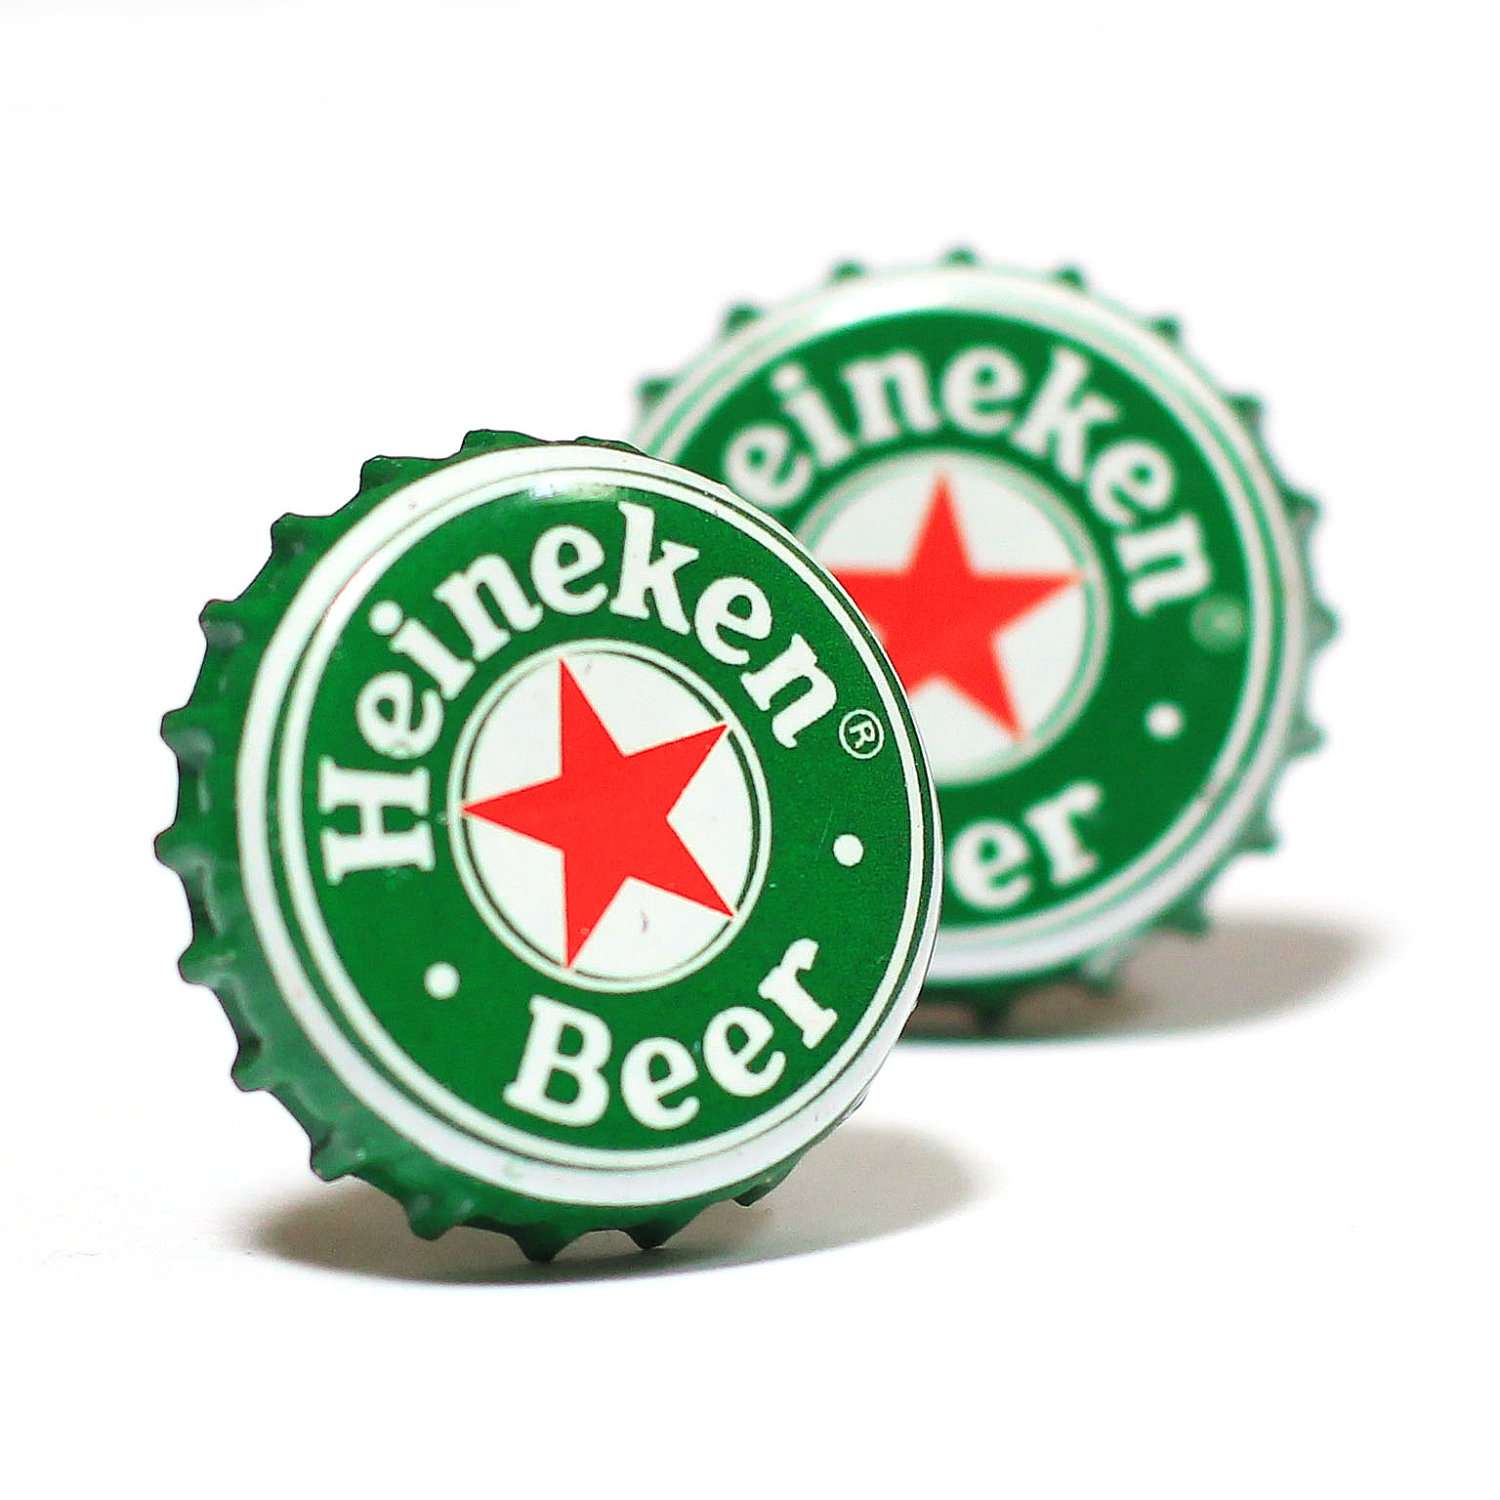 Green Heineken Bottle Cap Cuff Links. 9,50€ | Cufflinks | Pinterest ...